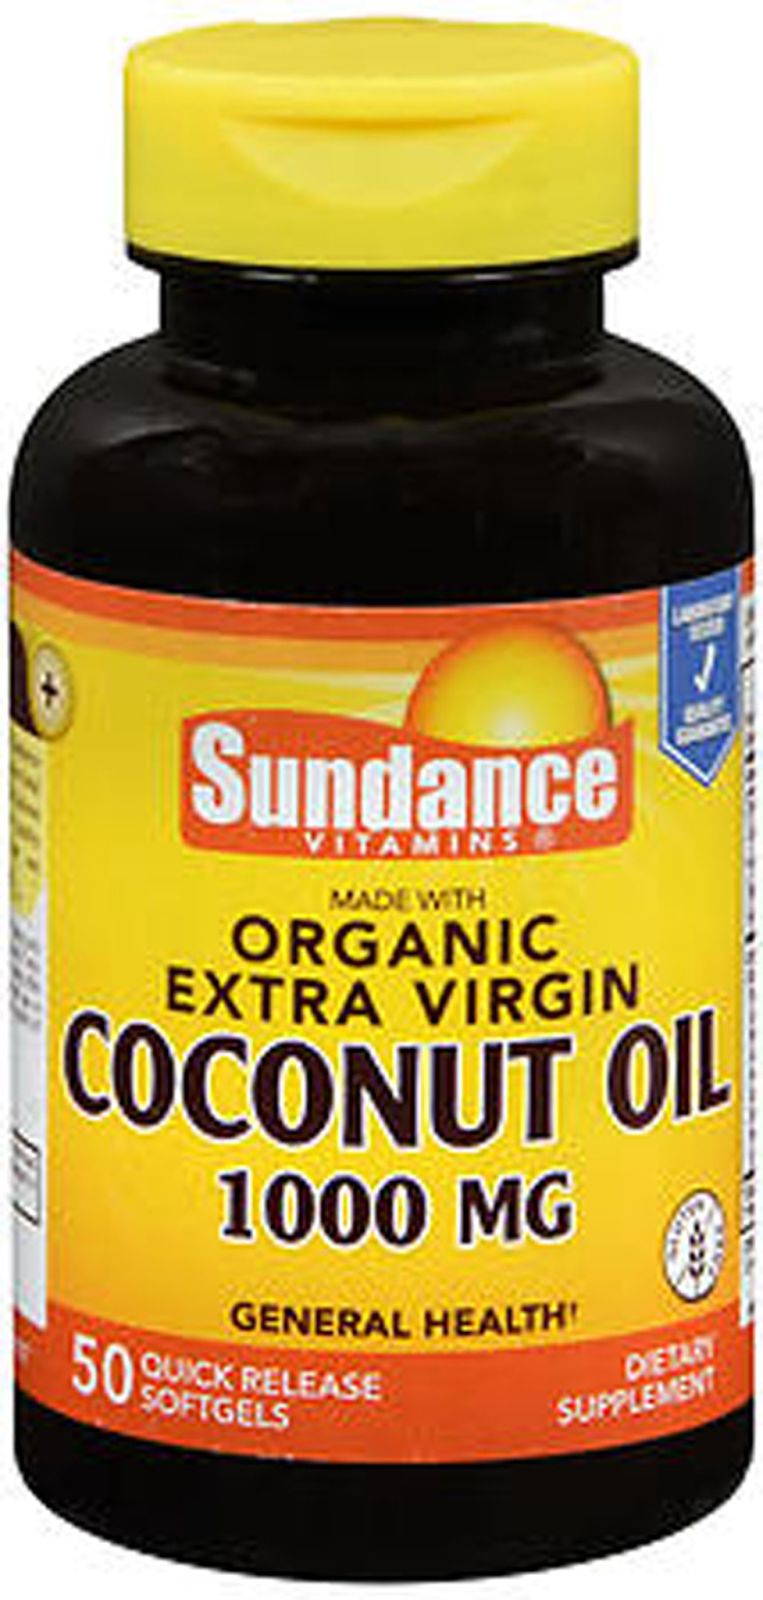 Sundance Vitamins Extra Virgin Coconut Oil 1000 mg - 50 Softgels